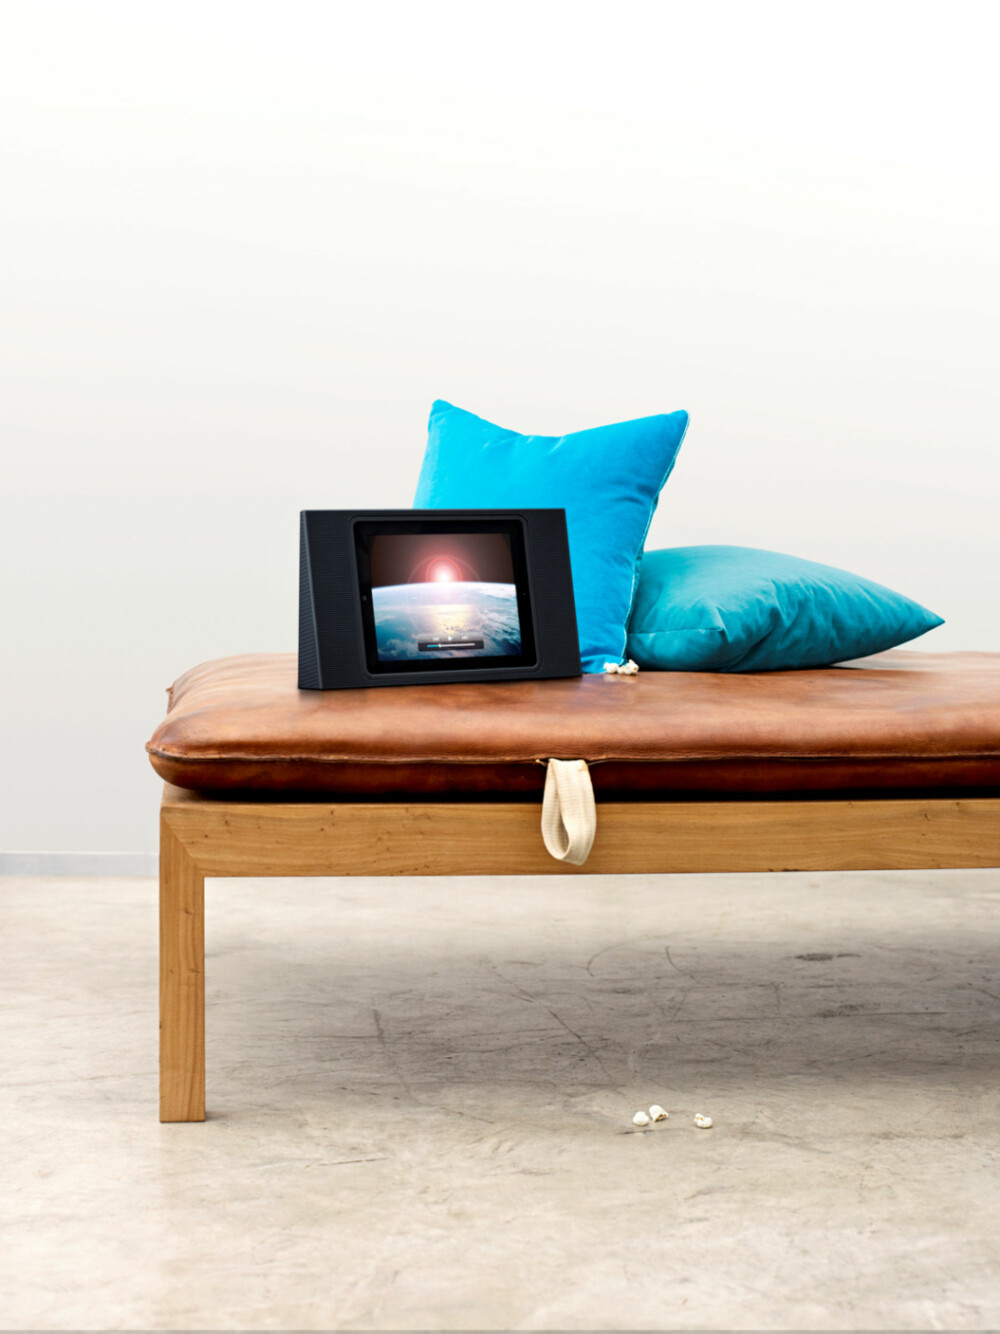 KINO: Dokk iPad-en inn i BeoPlay 3, sett den på høykant og du har en minikino for sofakroken eller senga.